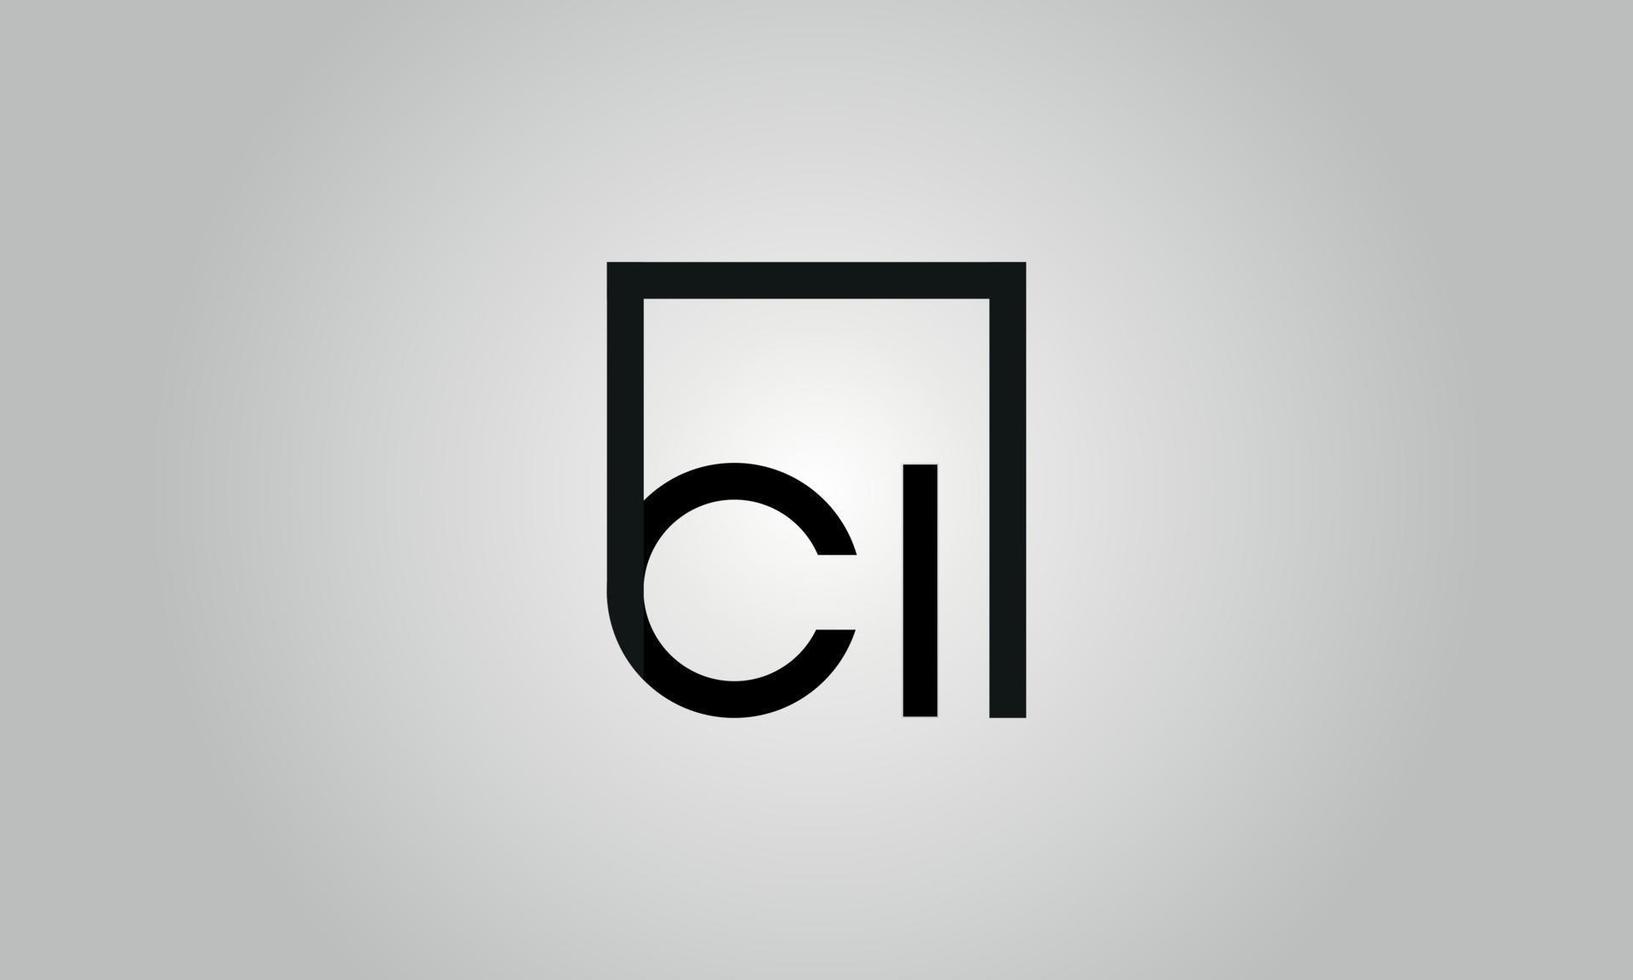 Buchstabe ci Logo-Design. ci-Logo mit quadratischer Form in schwarzen Farben Vektor kostenlose Vektorvorlage.